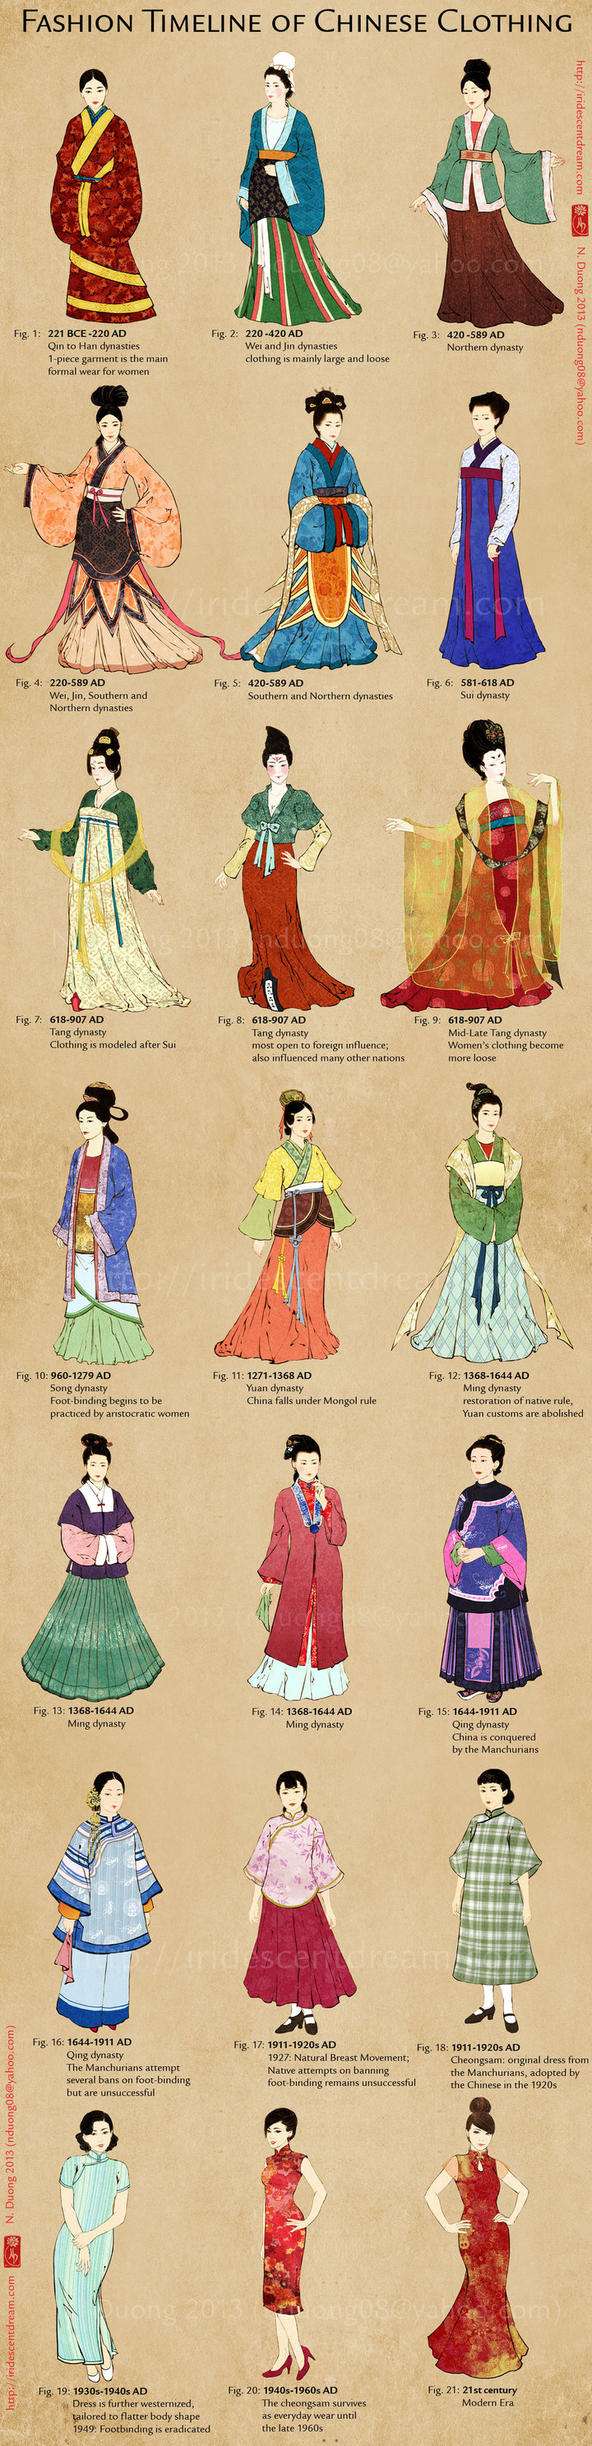 越南人画的中国历代女子服饰变迁图 可信么 丨维森工作室 知乎